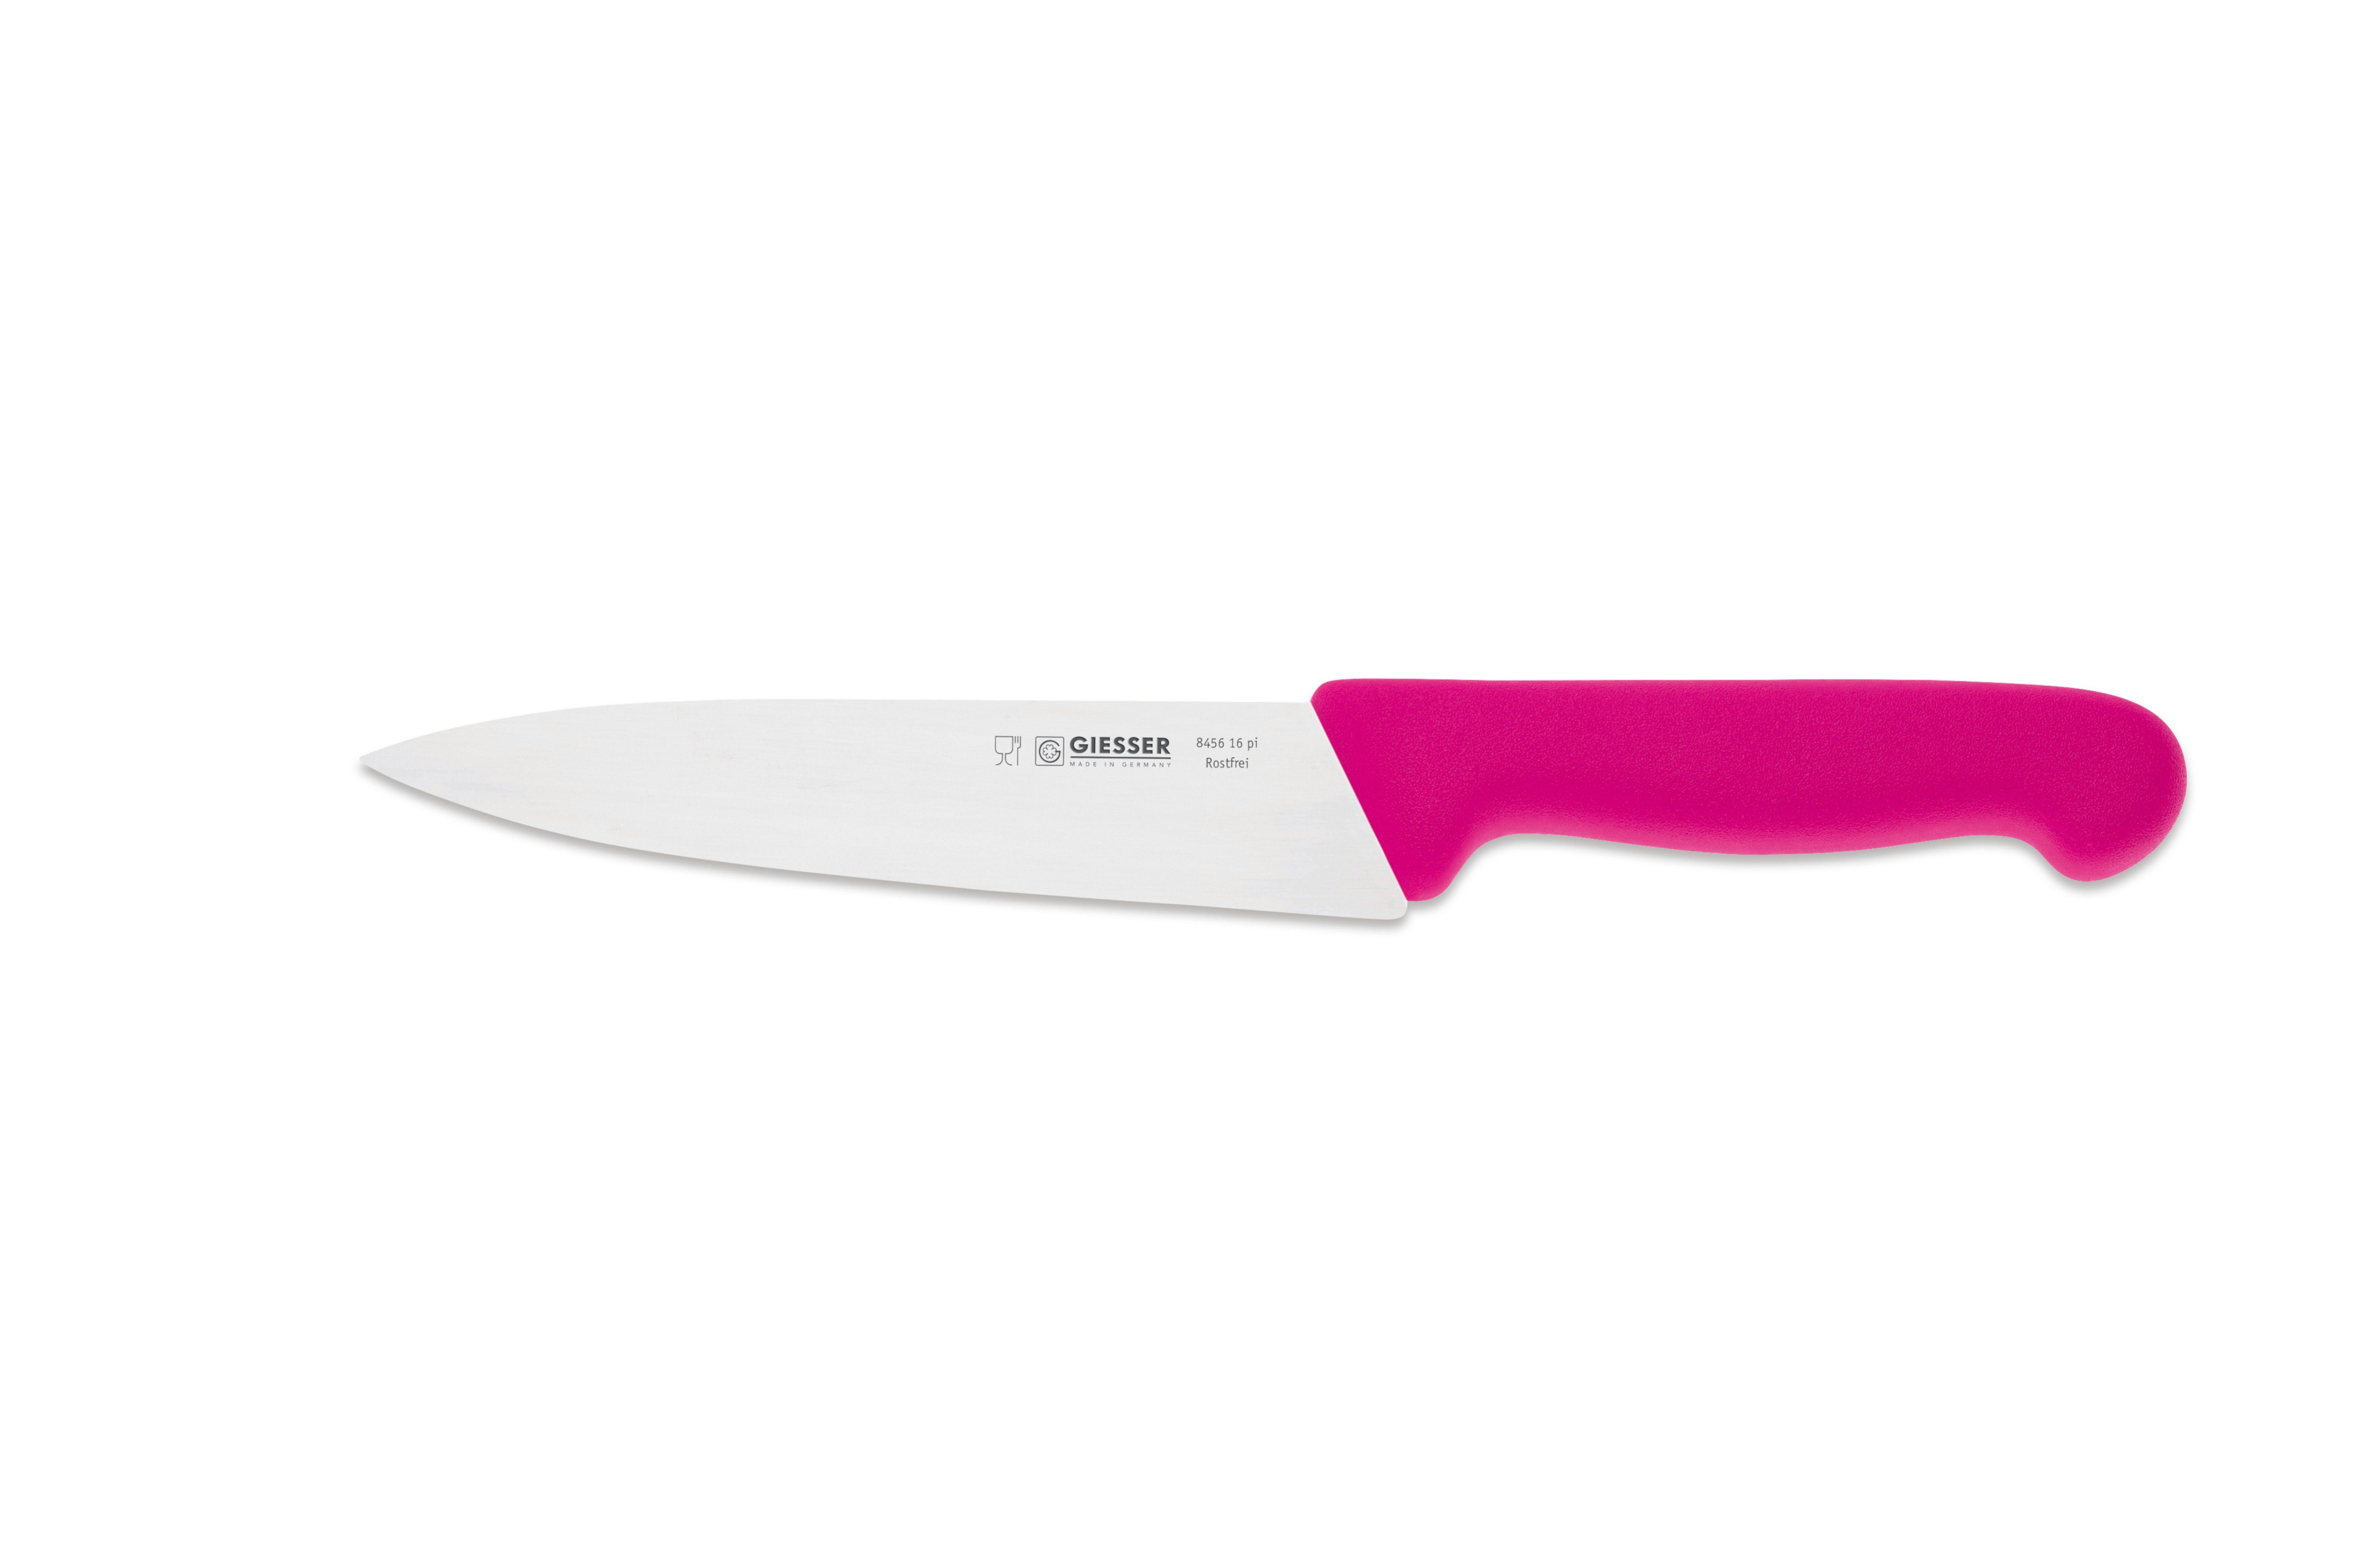 Küche Handabzug, Kochmesser 8456, Küchenmesser jede schmale, scharf Klinge, Messer für Giesser Ideal pink mittelspitze